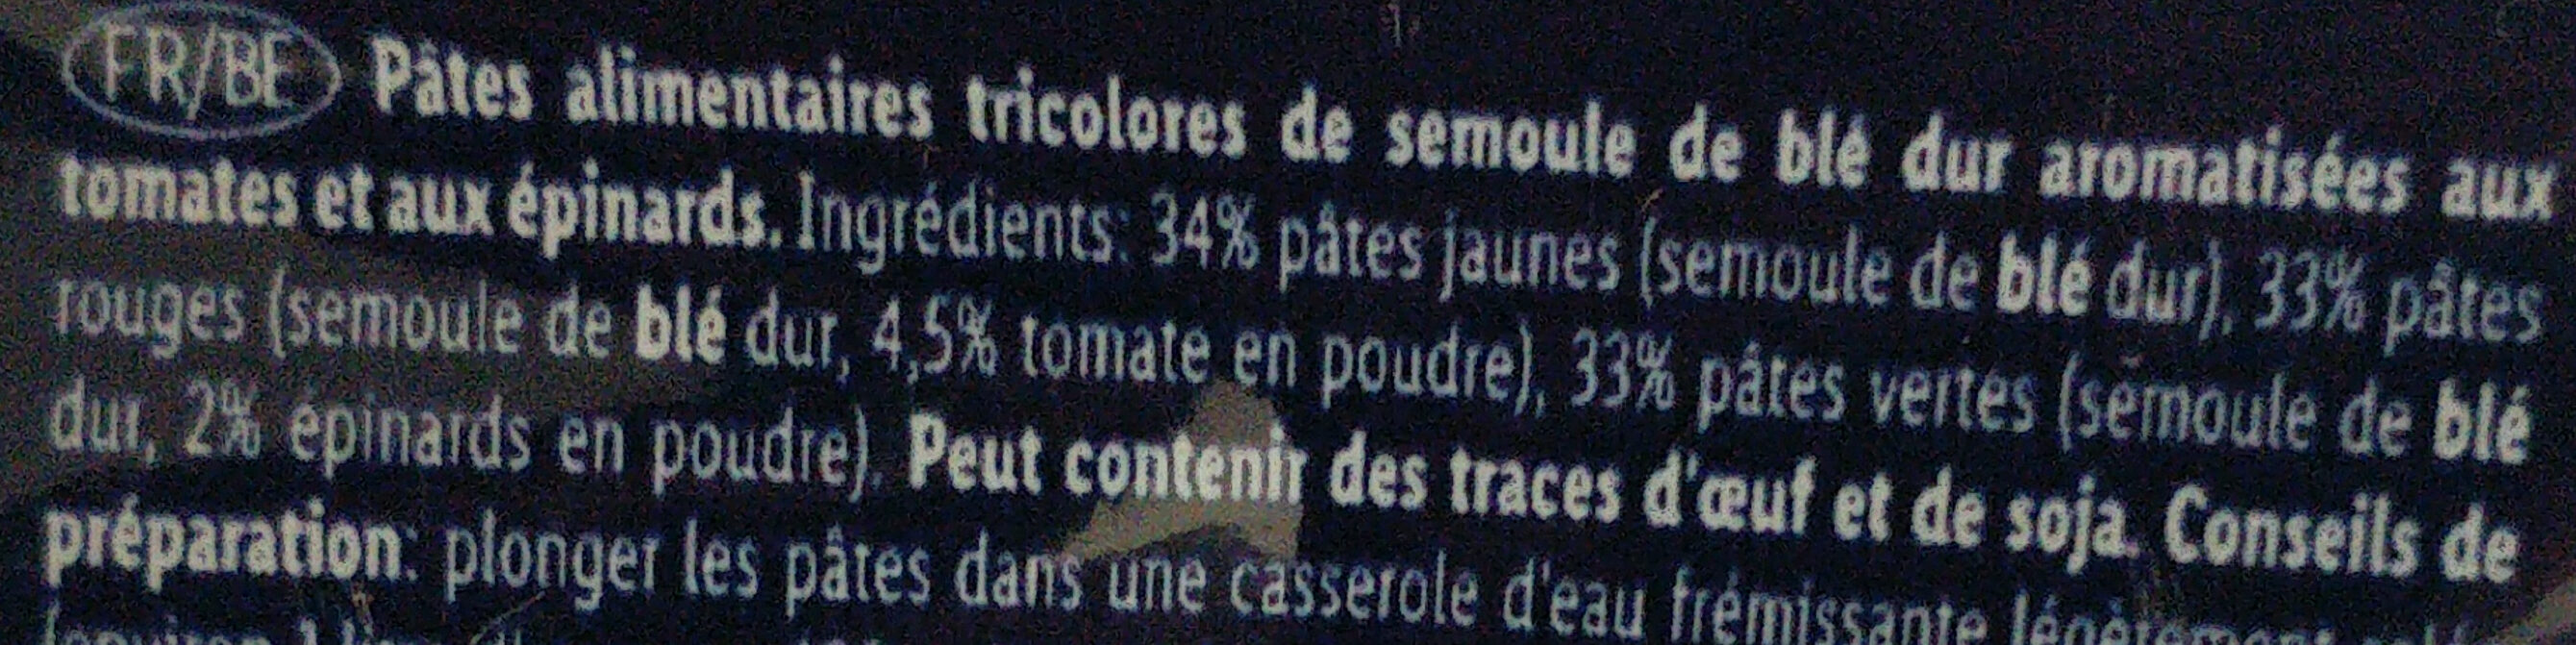 Trottole Tricolore - Ingrédients